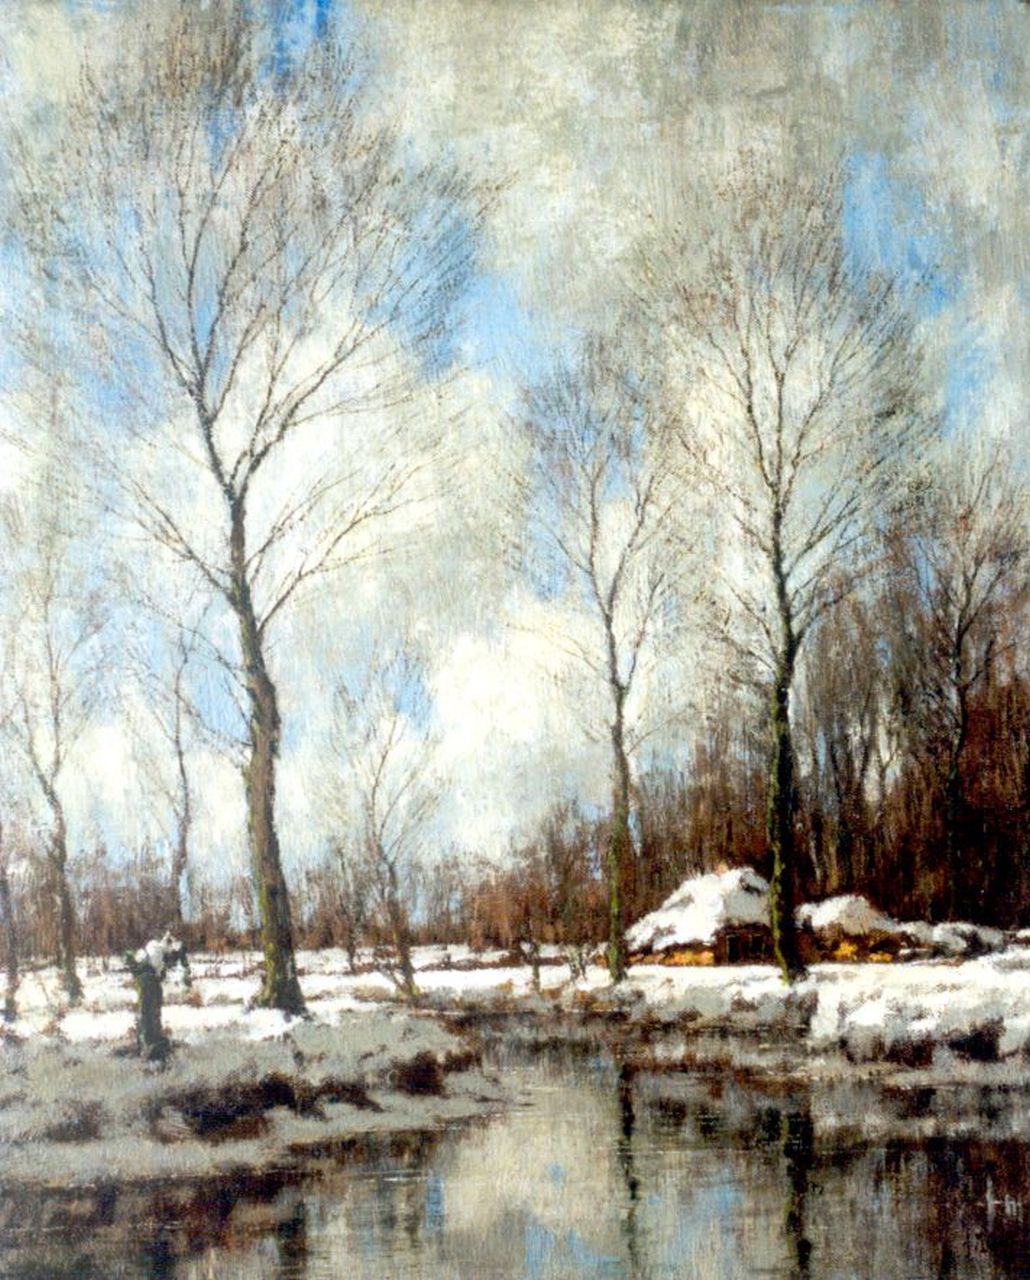 Gorter A.M.  | 'Arnold' Marc Gorter, Besneeuwd winterlandschap bij de Vordense beek (pendant van zomer nr. 6001), olieverf op doek 56,5 x 46,5 cm, gesigneerd rechtsonder